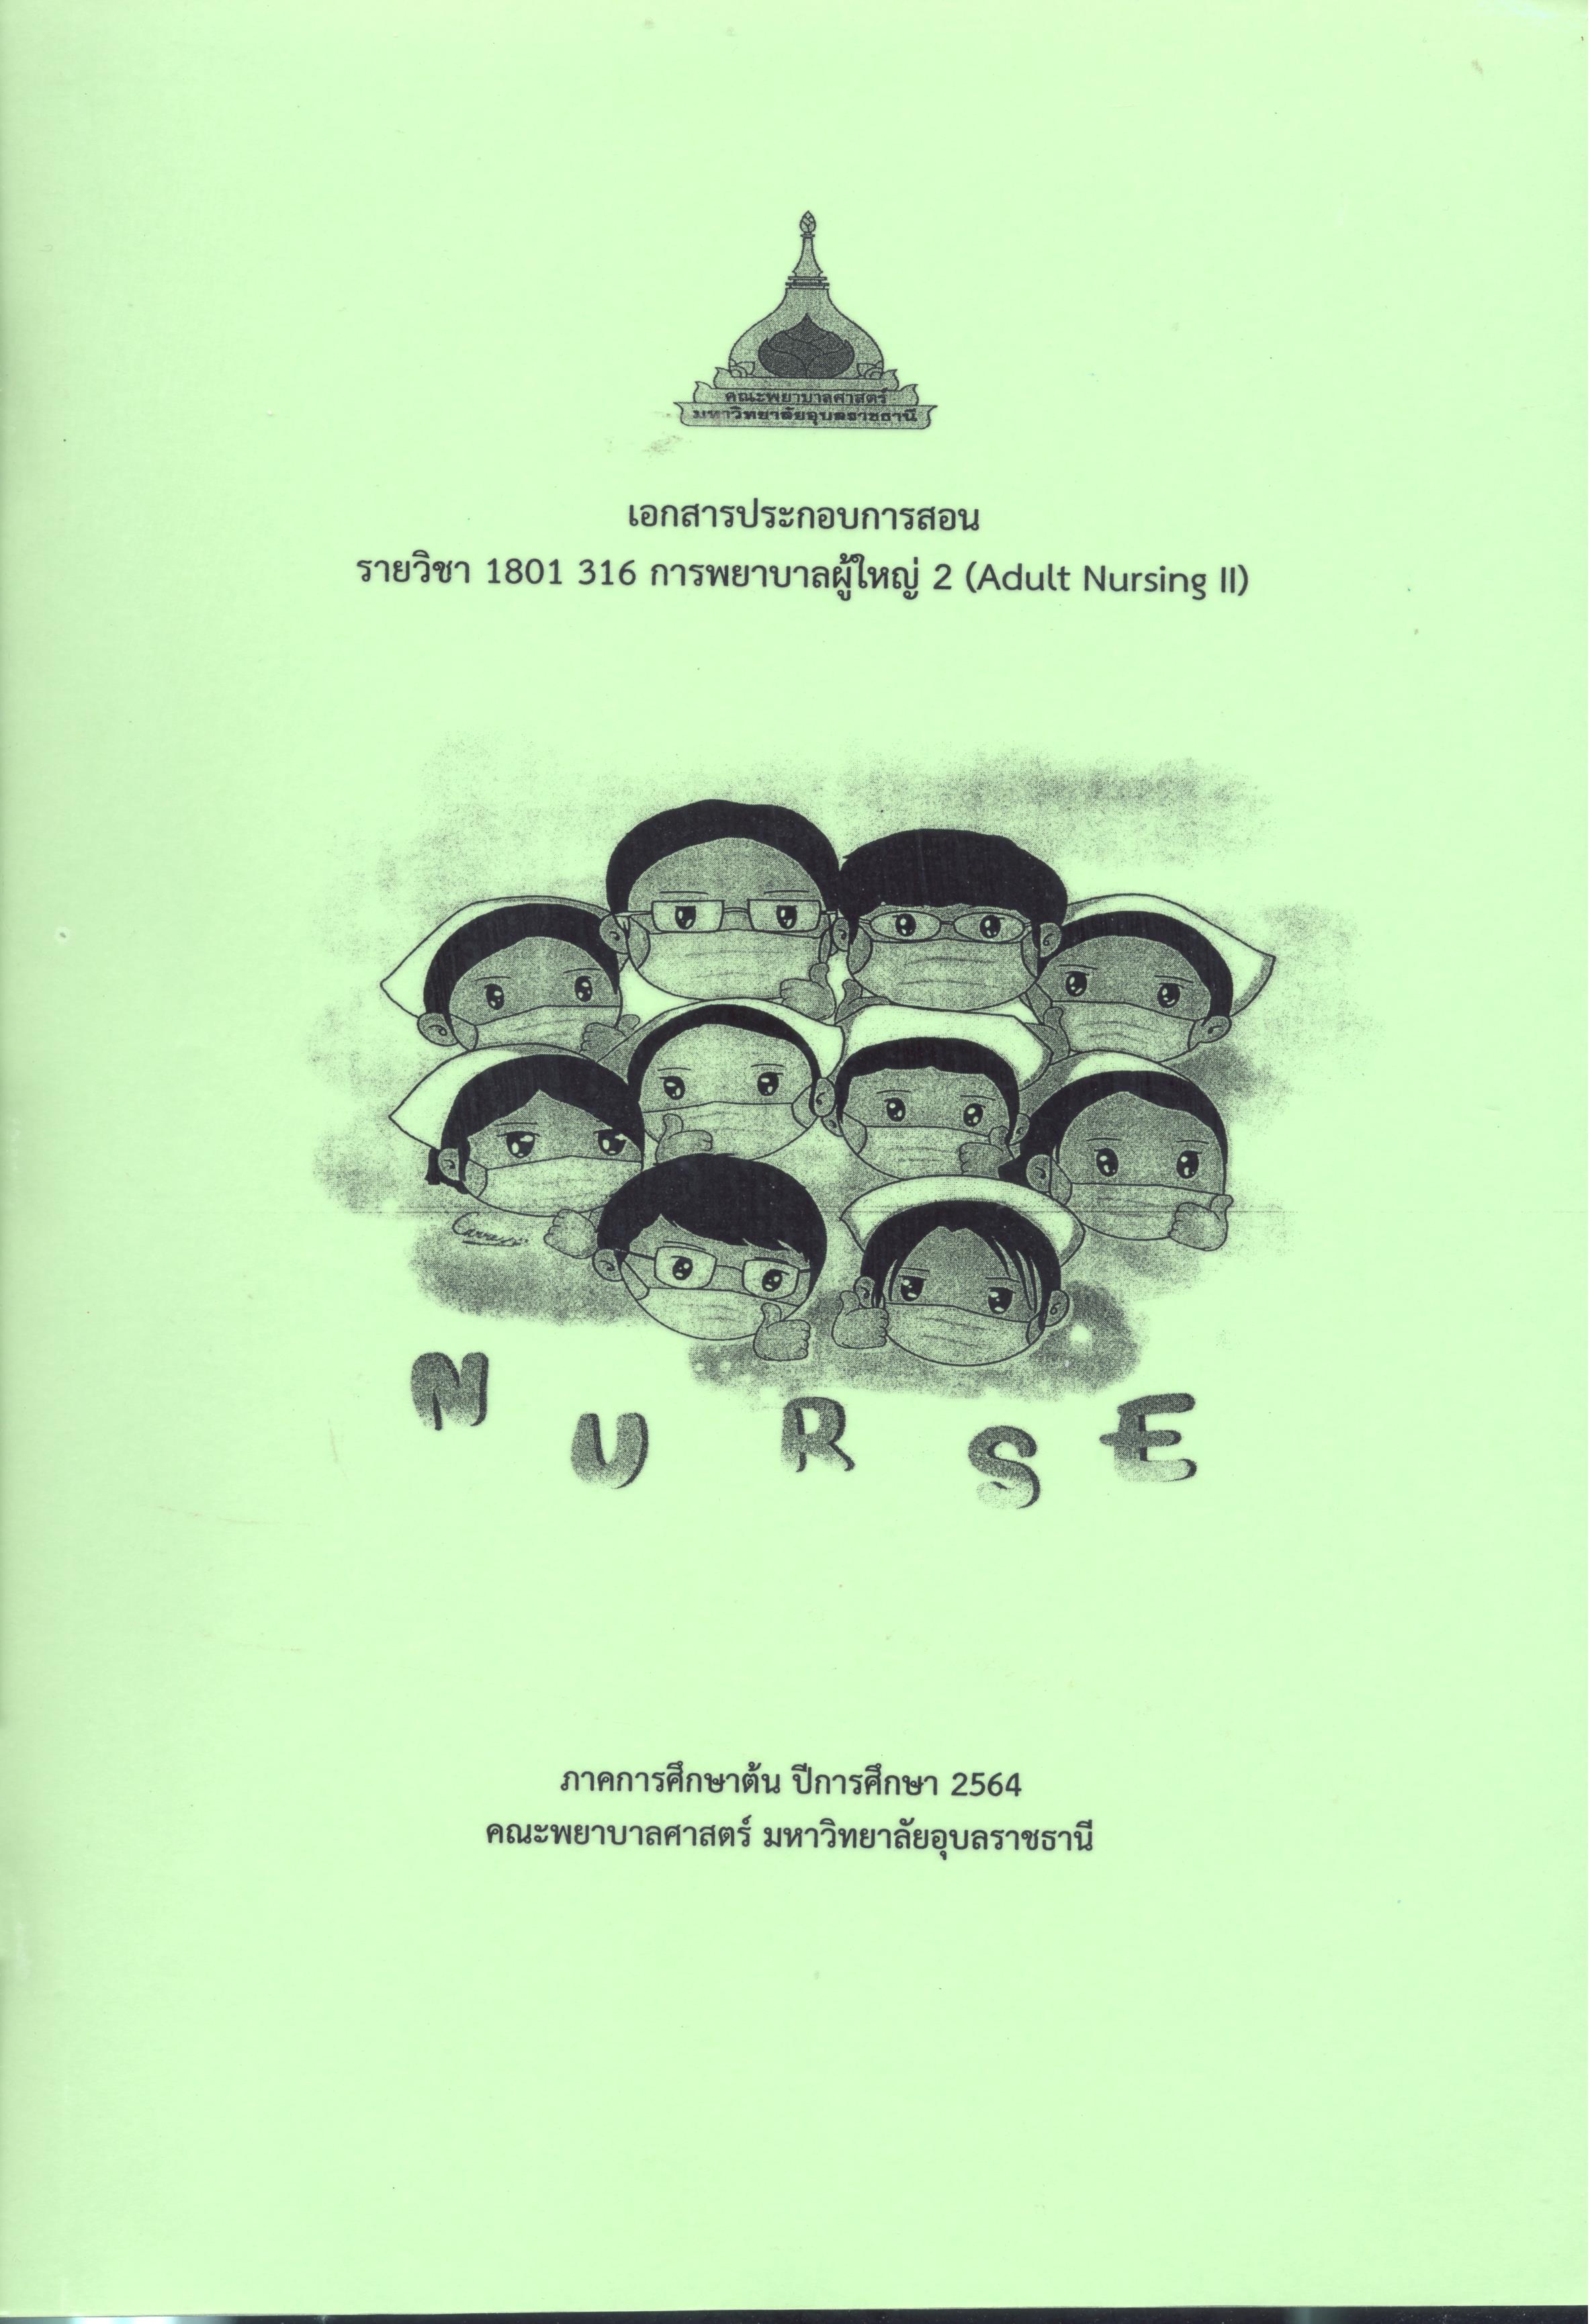 เอกสารประกอบการสอน รายวิชา 1801 316 การพยาบาลผู้ใหญ่ 2 (Adult nursing)